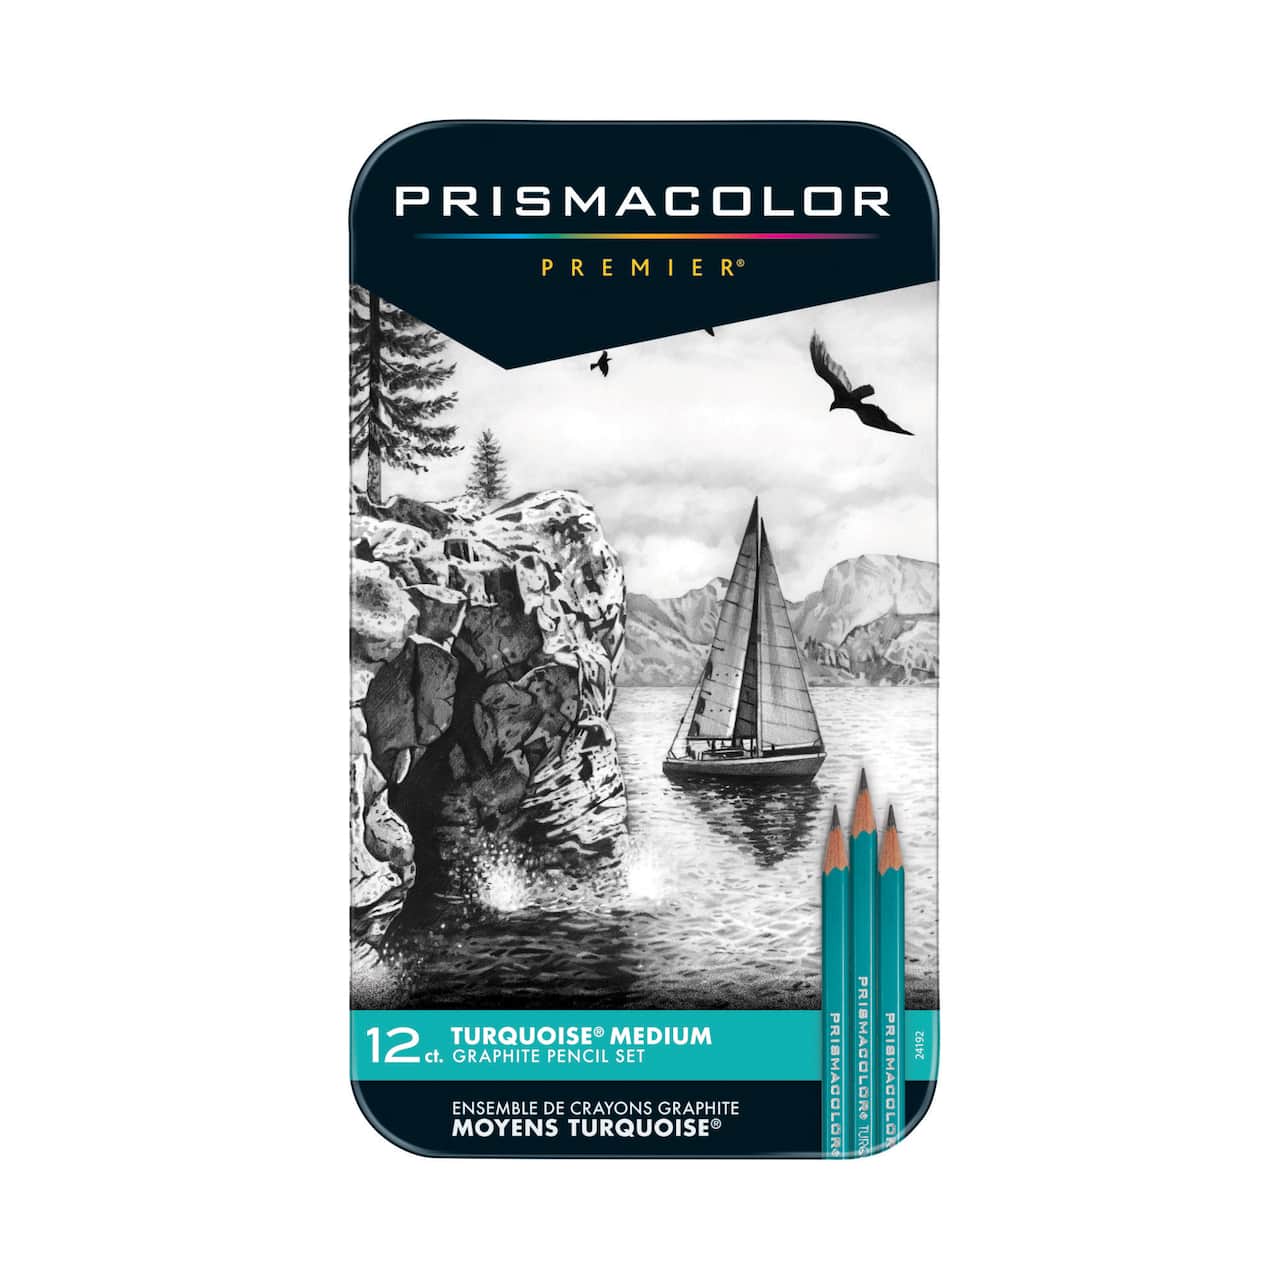 6 Packs: 12 ct. (72 total) Prismacolor® Premier® Turquoise Medium Graphite  Pencil Set